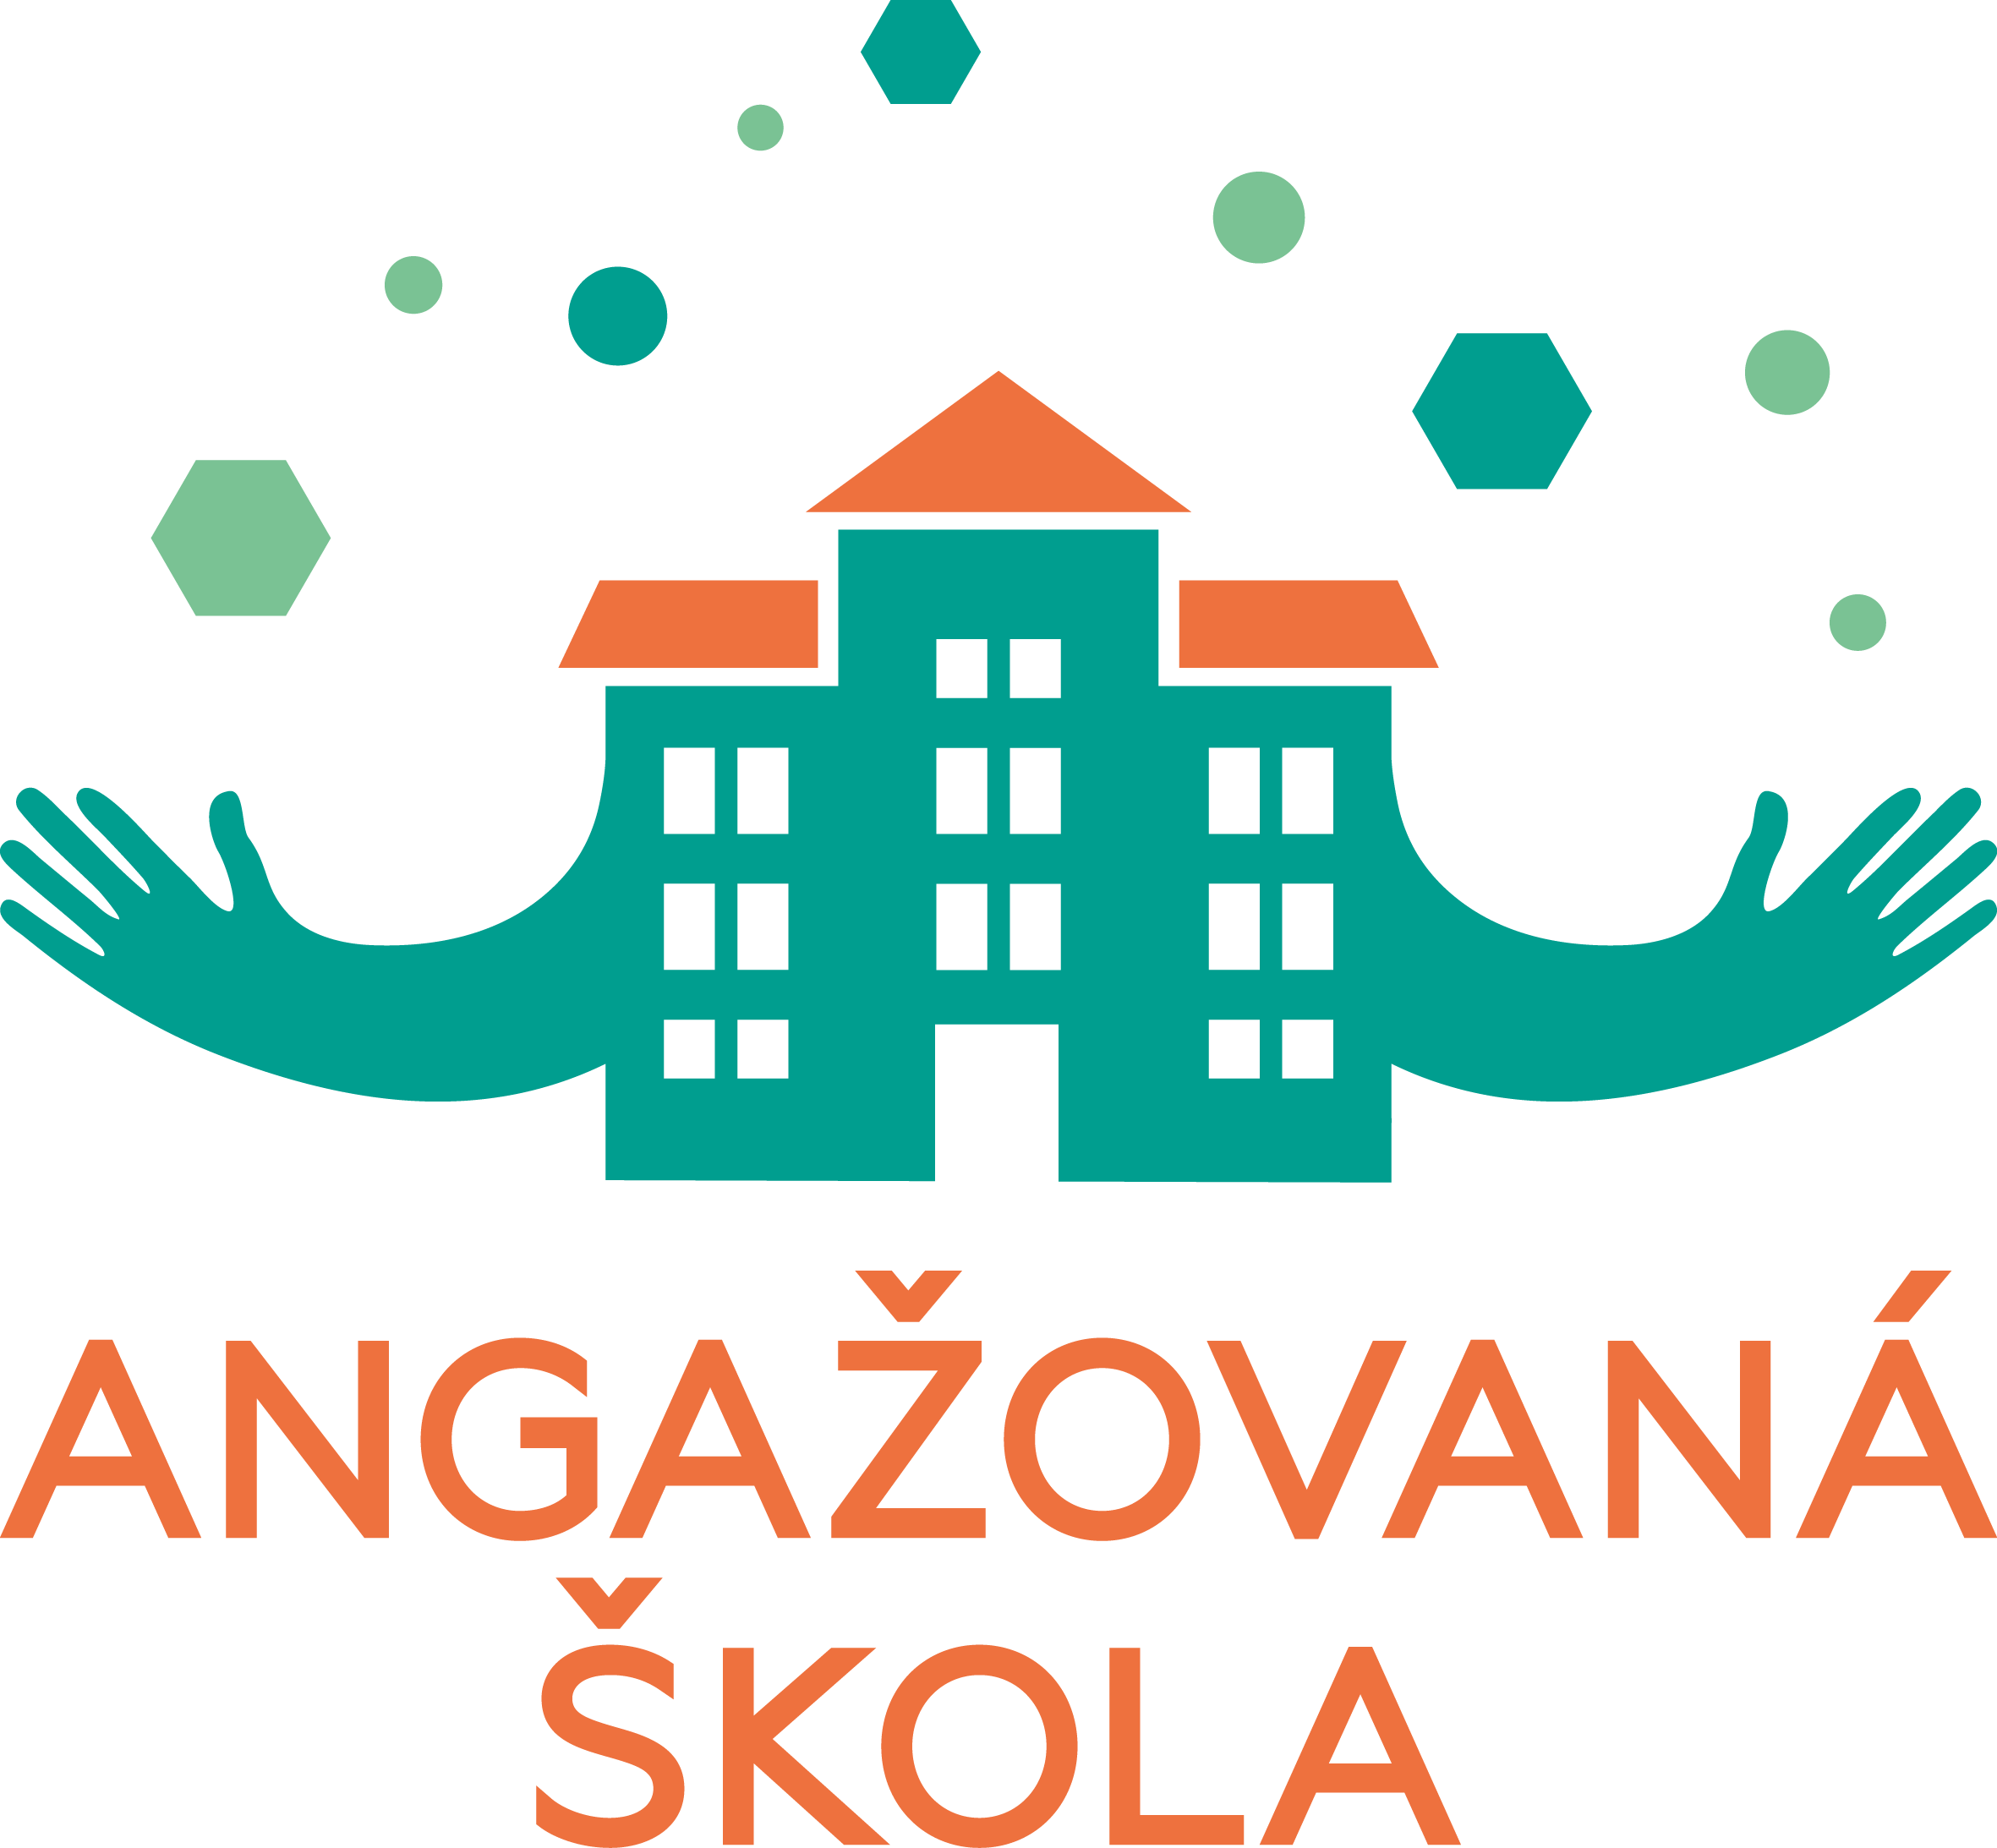 angazovana skola logo